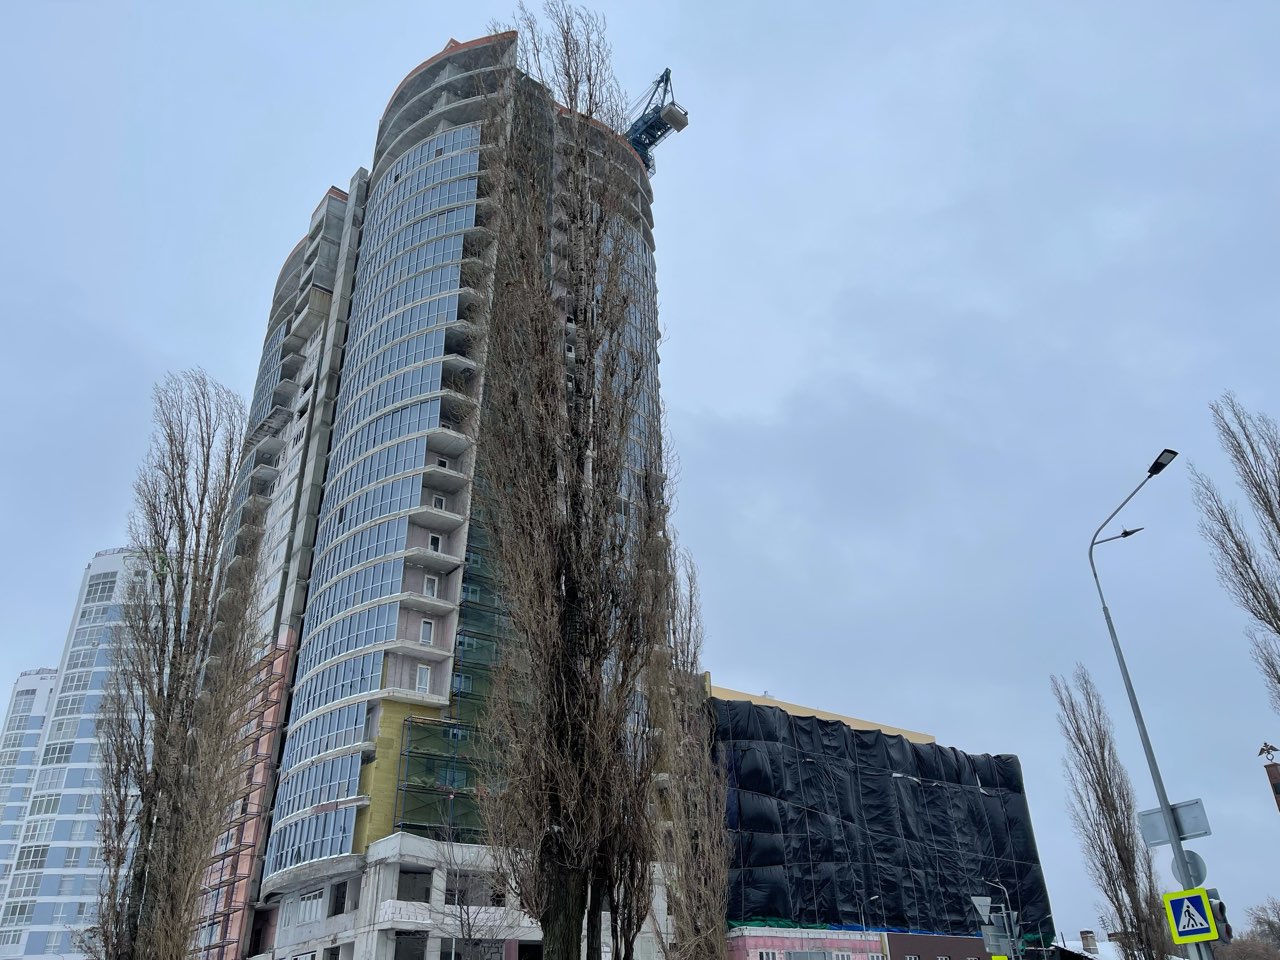 Площадь Сенную в Нижнем Новгороде перекроют из-за демонтажа башенного крана 1 и 2 мая  - фото 1